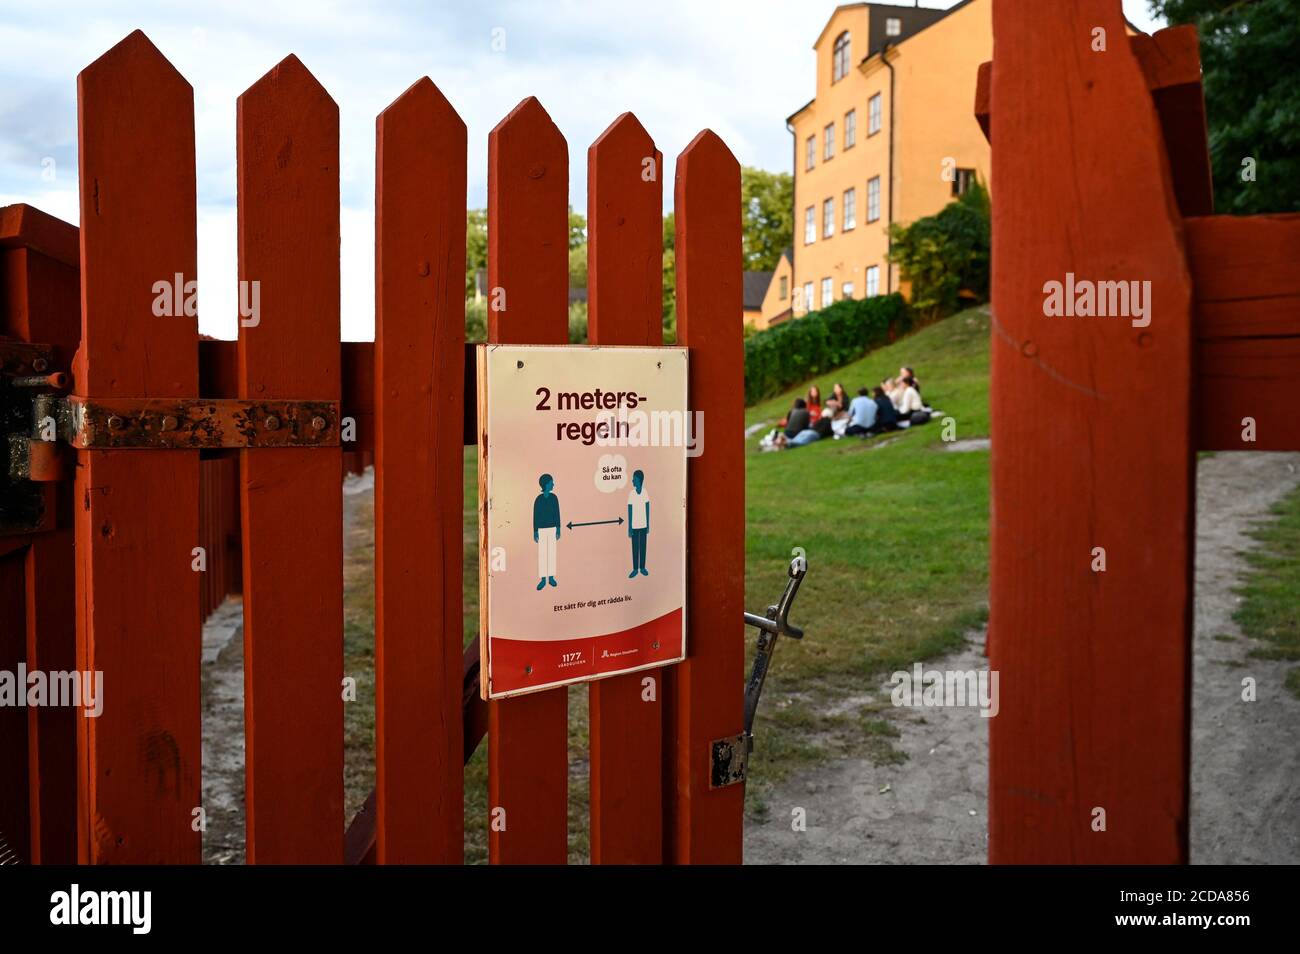 SVEZIA, Stoccolma, pandemia corona, malattia covid 19, nessun arresto e obbligo maschera, ma le regole di distanza, l'ingresso di parco pubblico con recinzione in tradizionale svedese vernice rossa Foto Stock